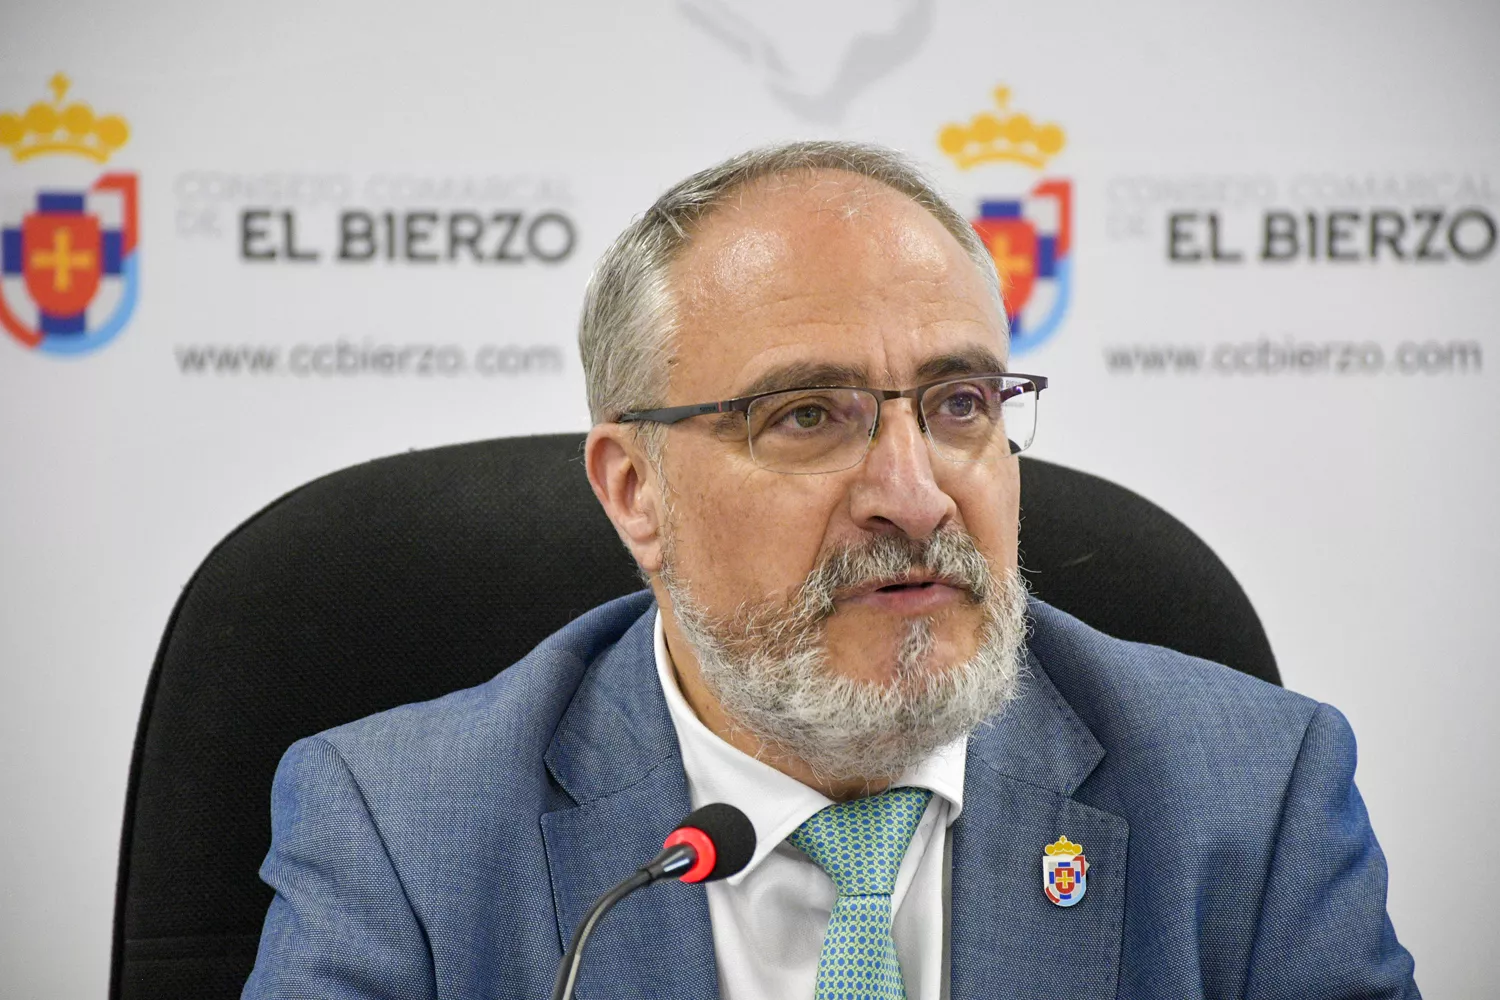 El presidente del Consejo Comarcal, Olegario Ramón, presenta la nueva campaña del Banco de Tierras del Bierzo